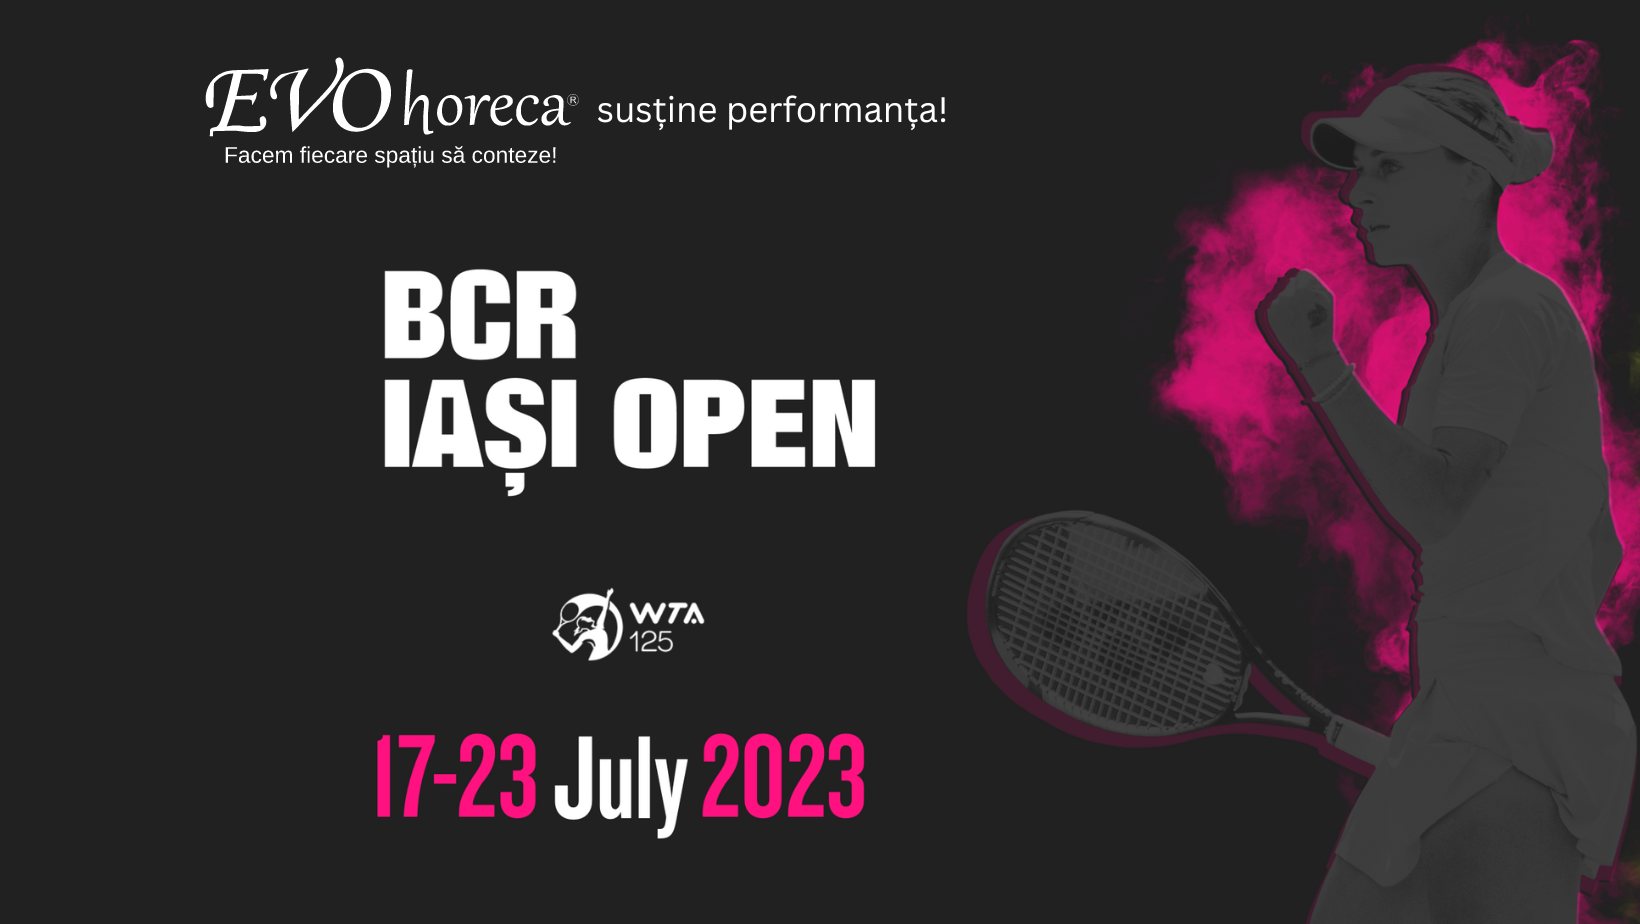 ȘTIRI: EVOhoreca este partener al BCR Iasi Open WTA, pentru al doilea an consecutiv 29.06.2023